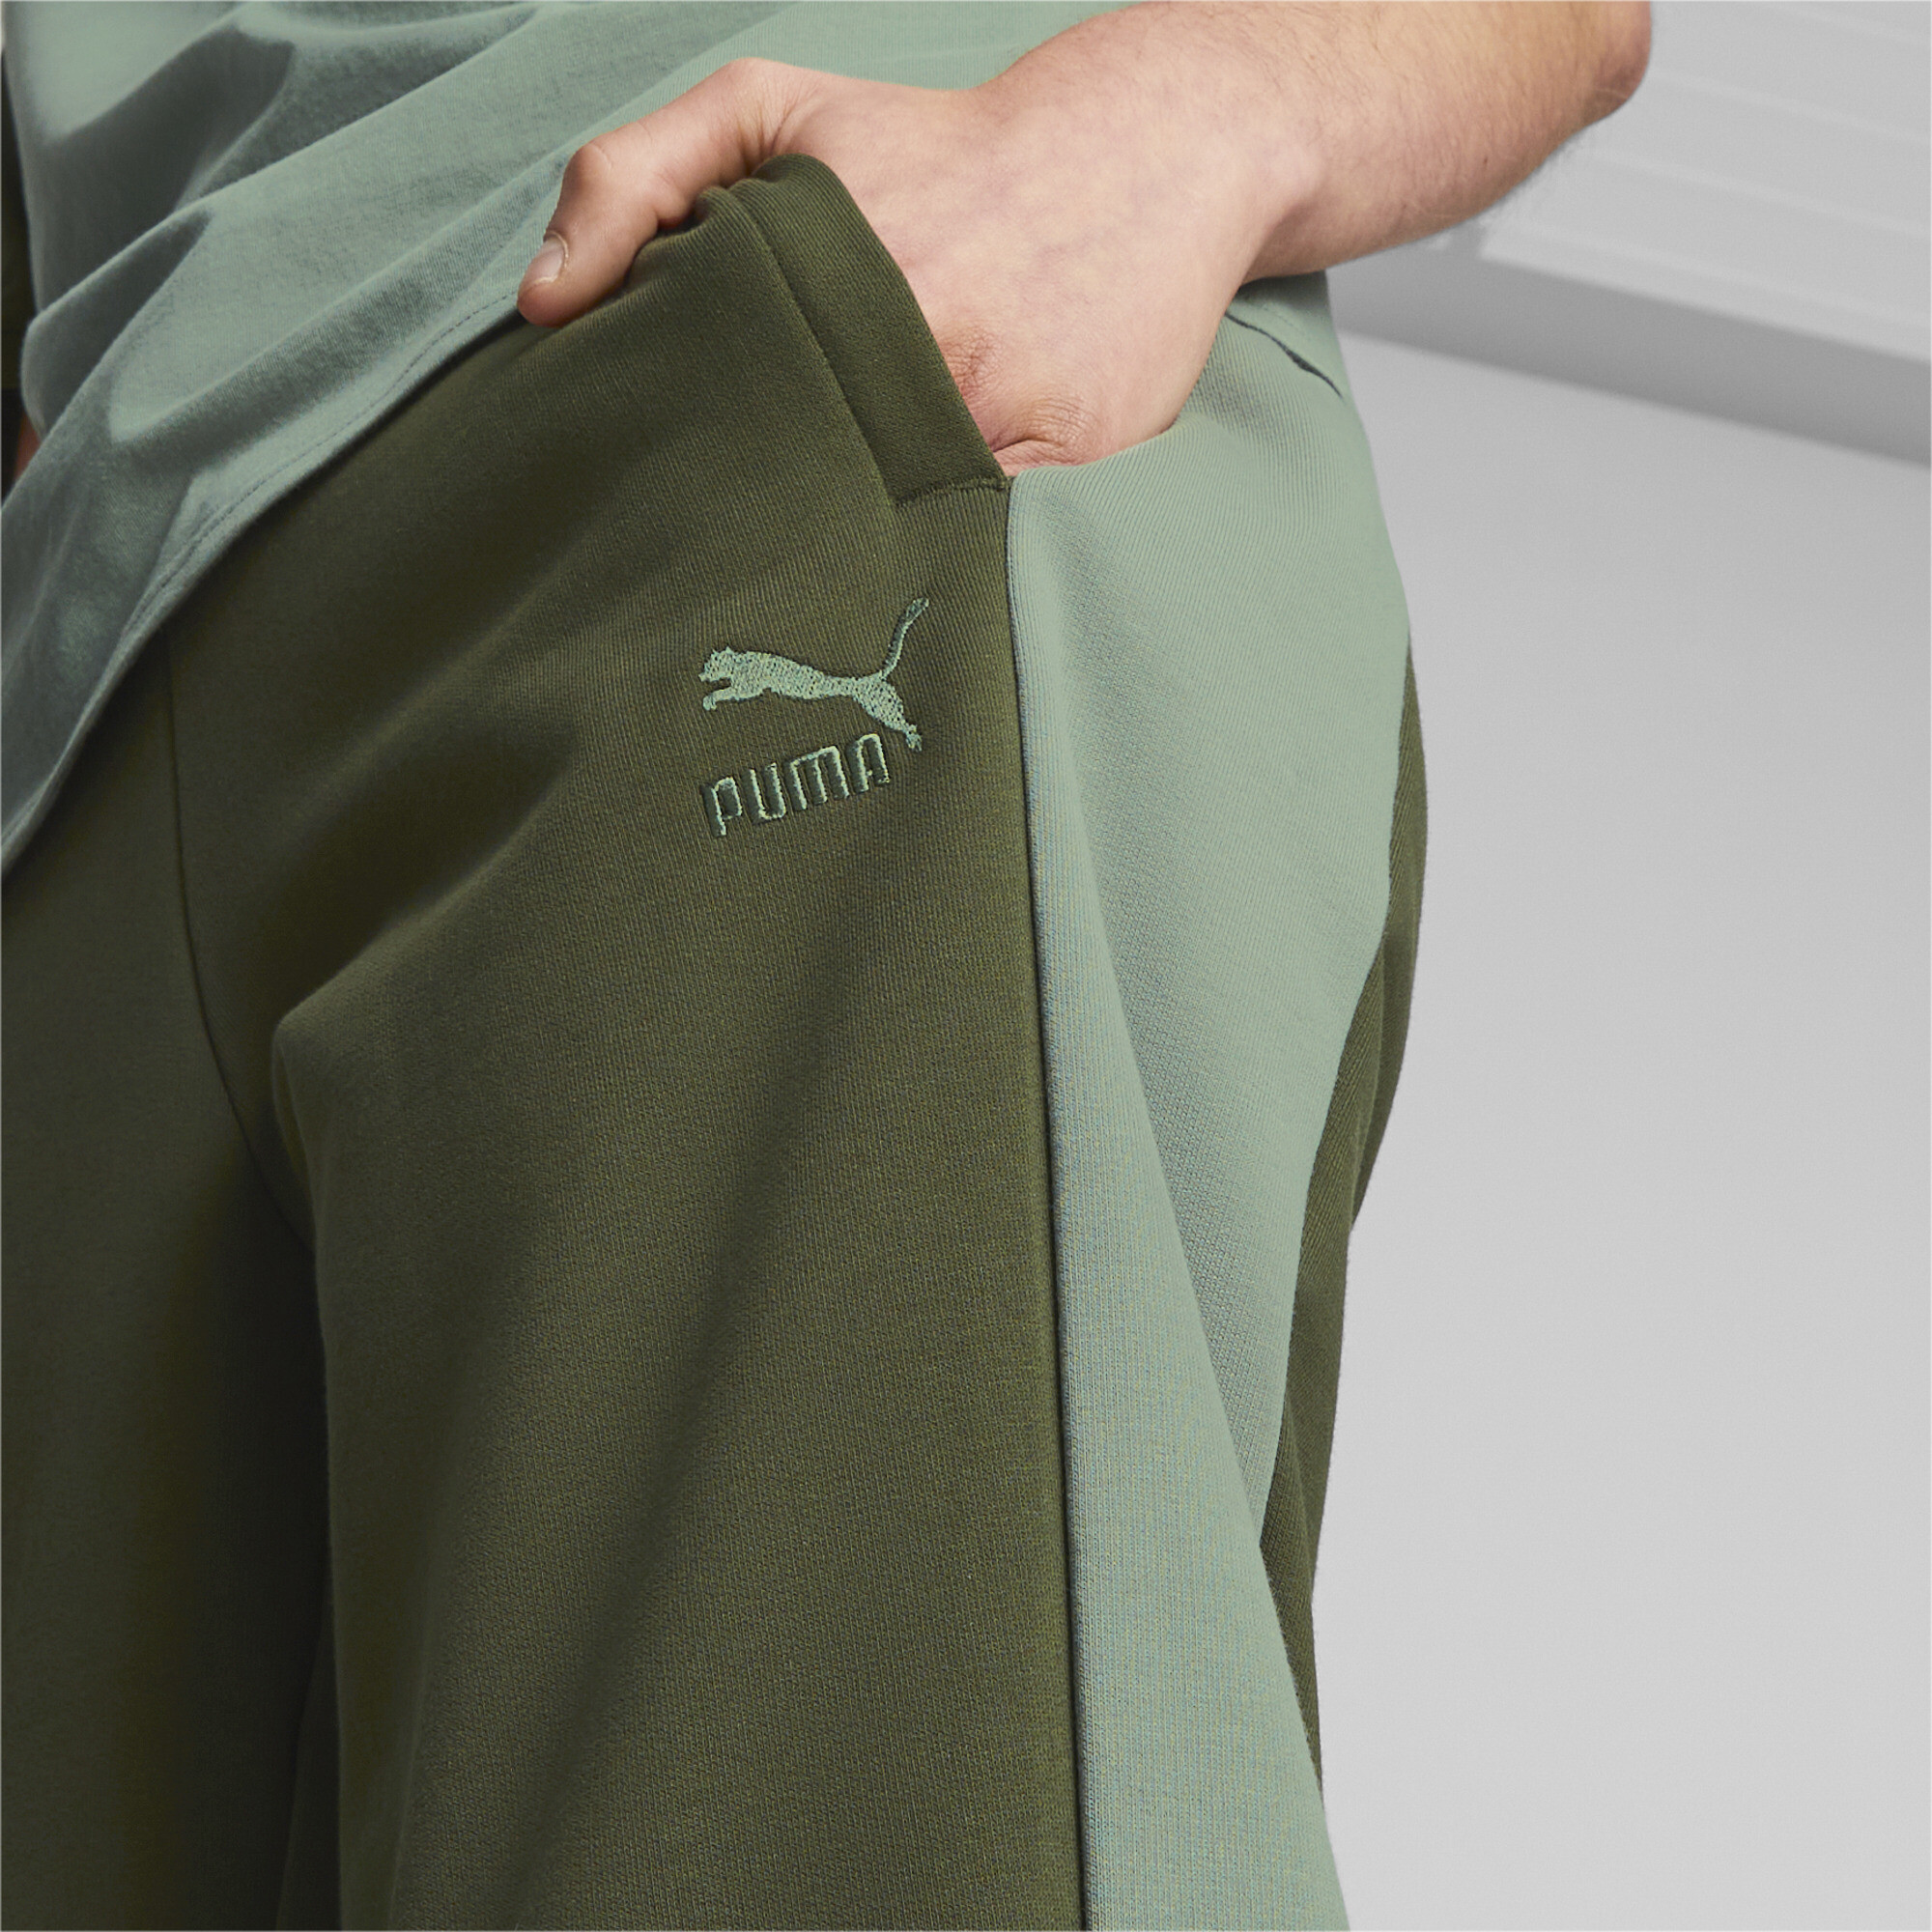 Men's Puma Classics Block's Sweatpants, Green, Size M, Clothing